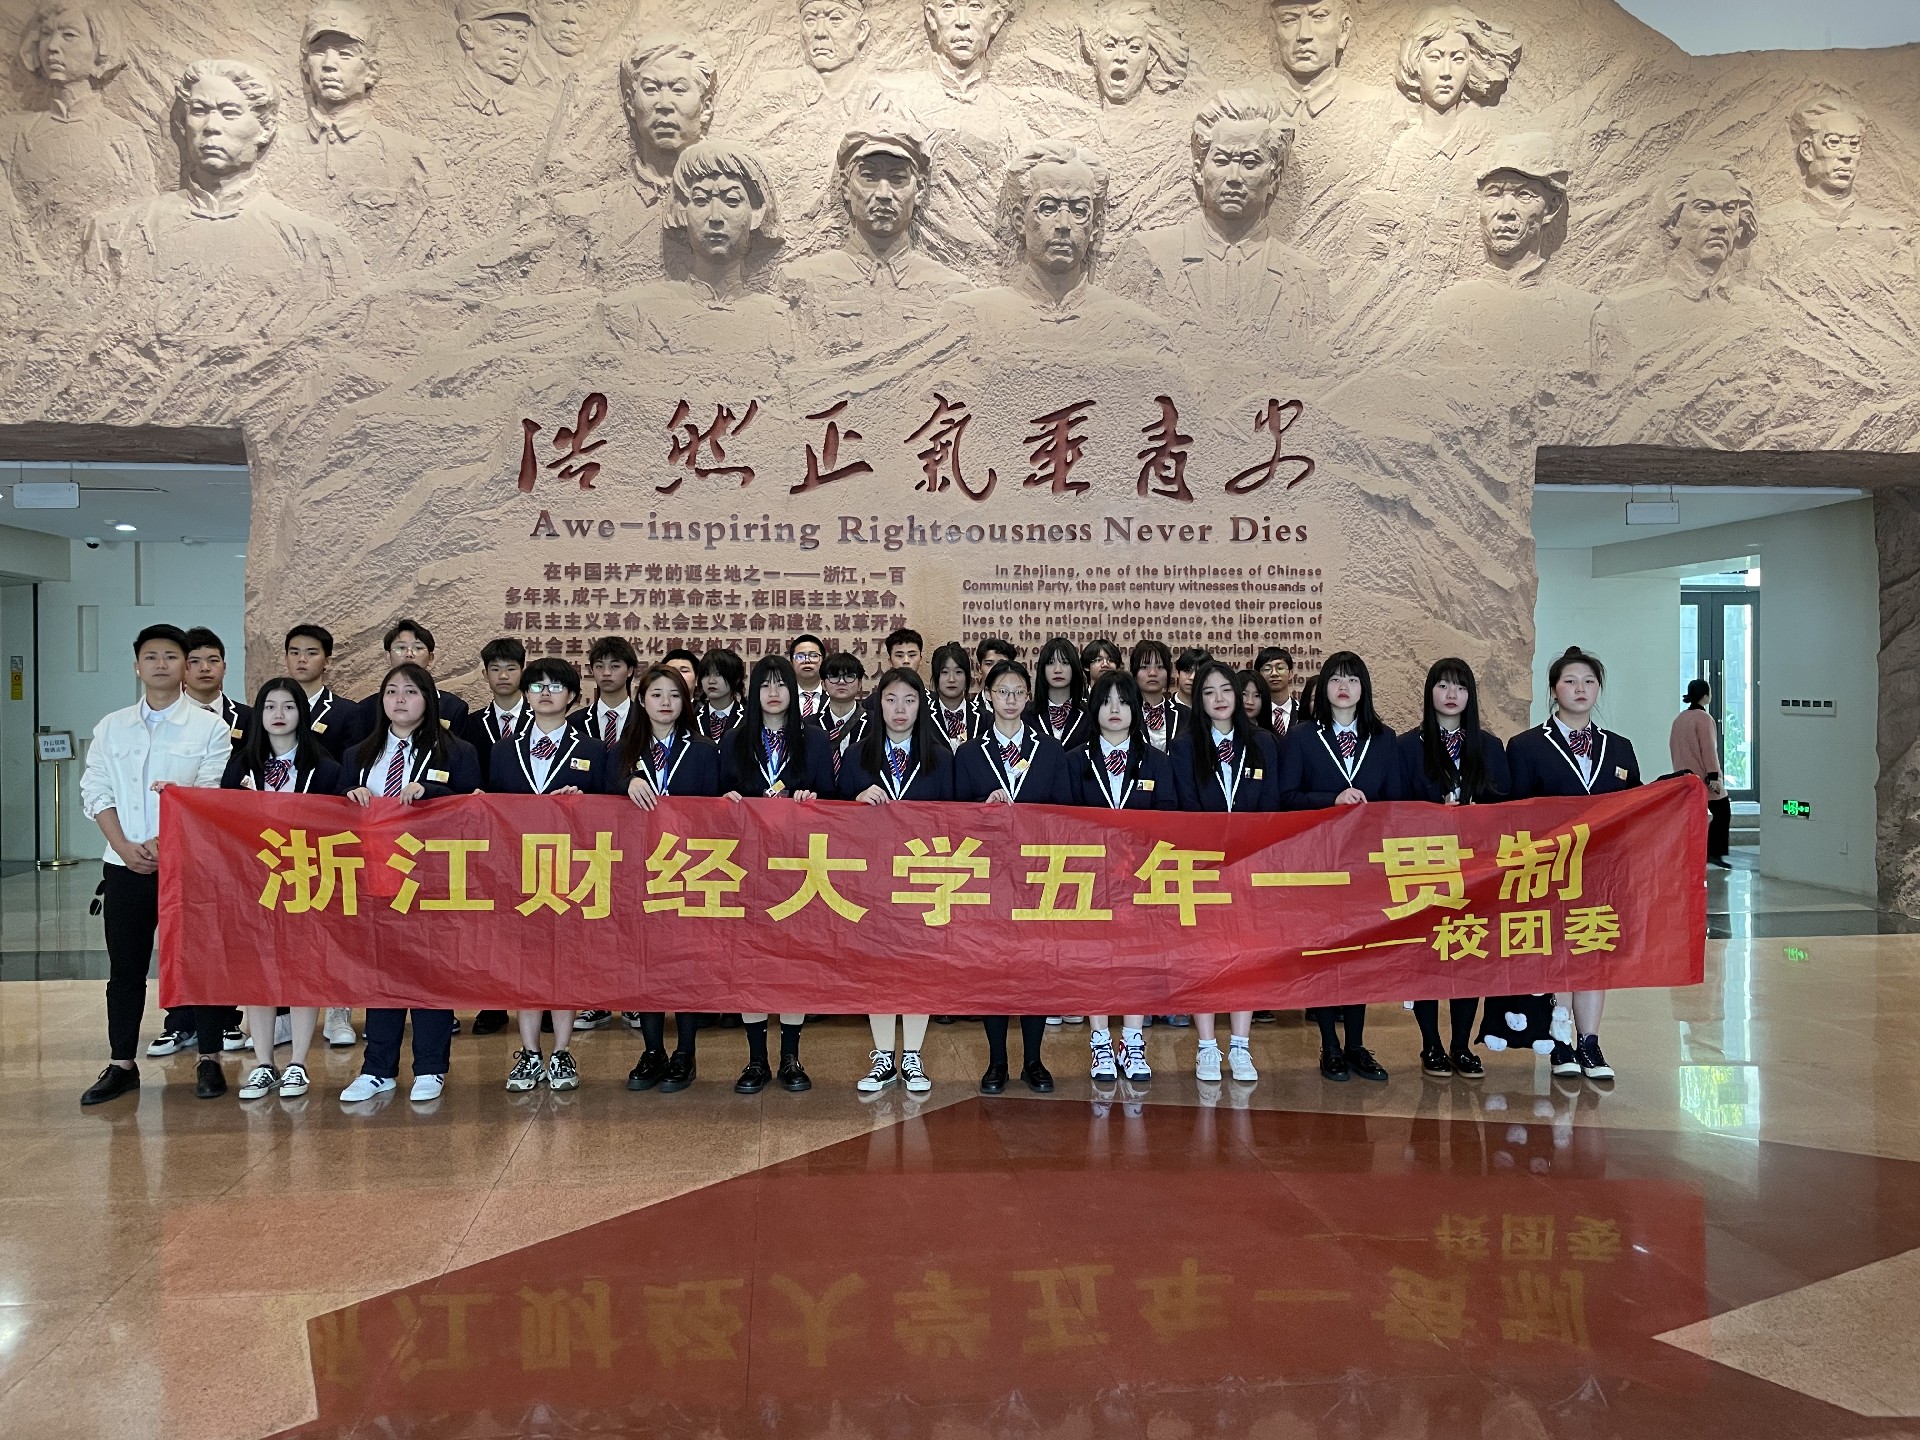 我校组织学生前往浙江革命烈士陵园进行祭奠扫墓、缅怀革命先烈